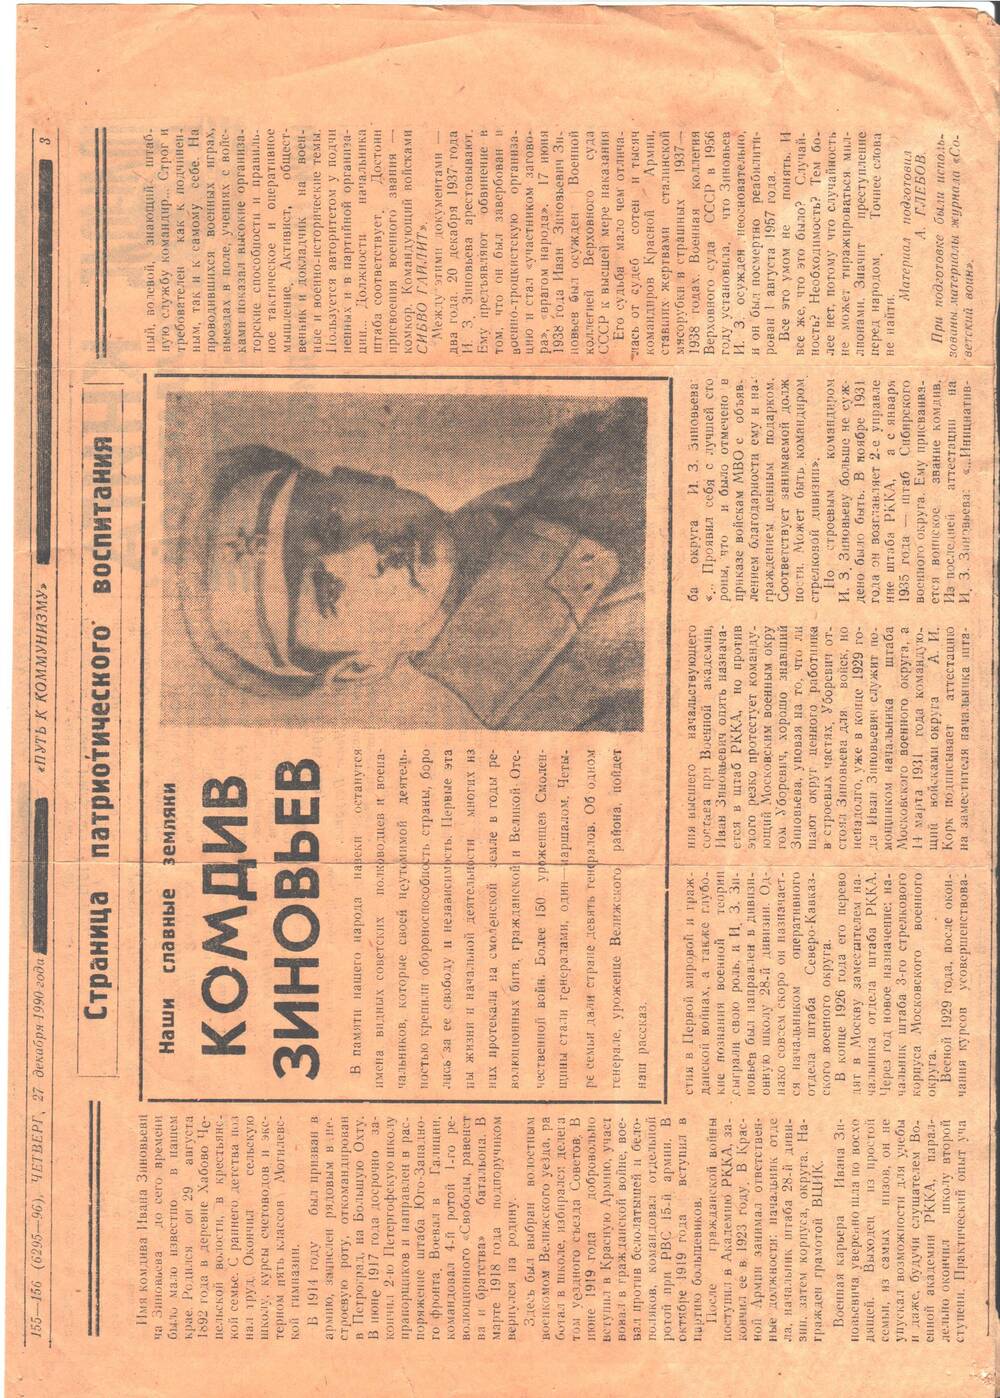 Вырезка из газеты Путь к коммунизму № 155-156 (6295-96) от 27 декабря 1990 года. Статья А. Глебова Наши славные земляки. Комдив Зиновьев